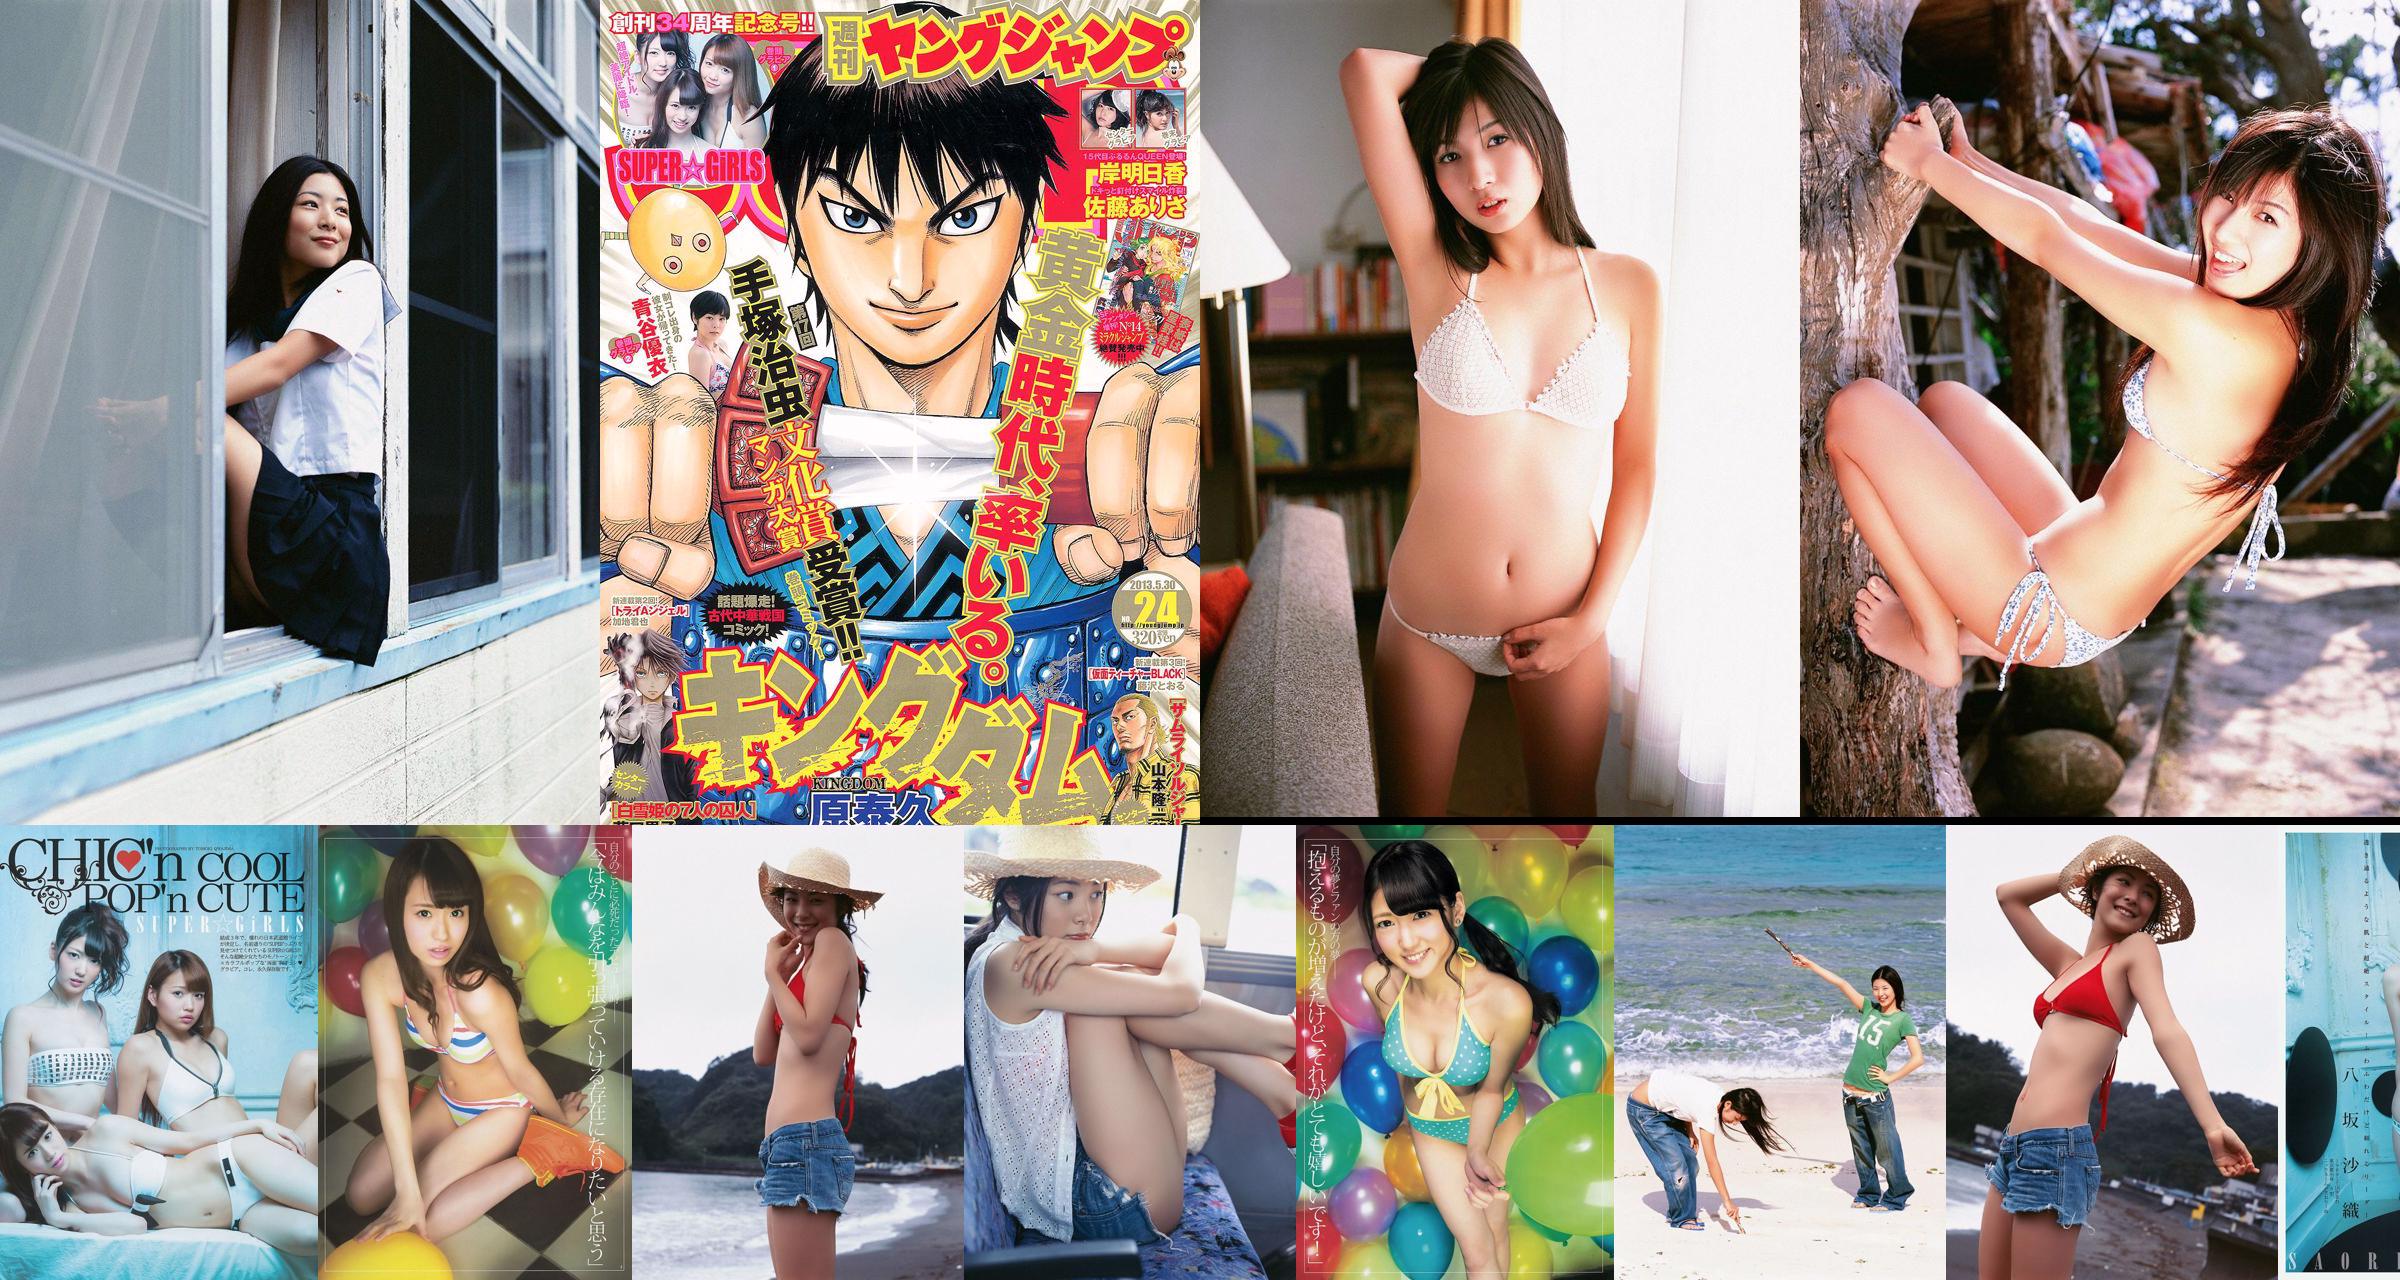 SUPER ☆ GiRLS Yui Aoya Asuka Kishi Arisa Sato [Weekly Young Jump] 2013 No.24 Photograph No.799d94 Page 2